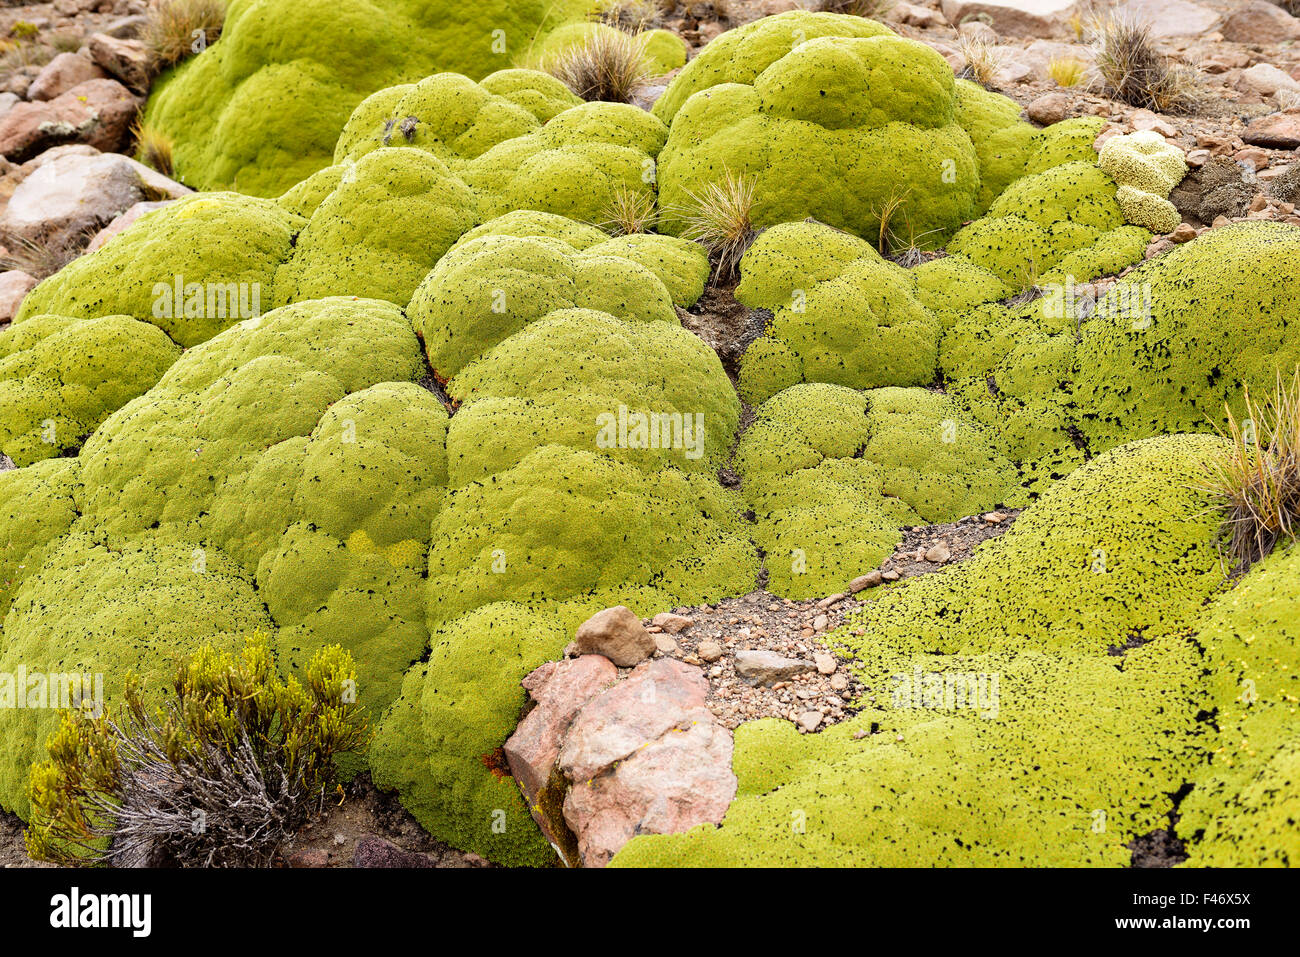 Yareta ou llaretta (Azorella compacta), plante coussin résineuse sur les pentes rocheuses, Altiplano, Bolivie Banque D'Images